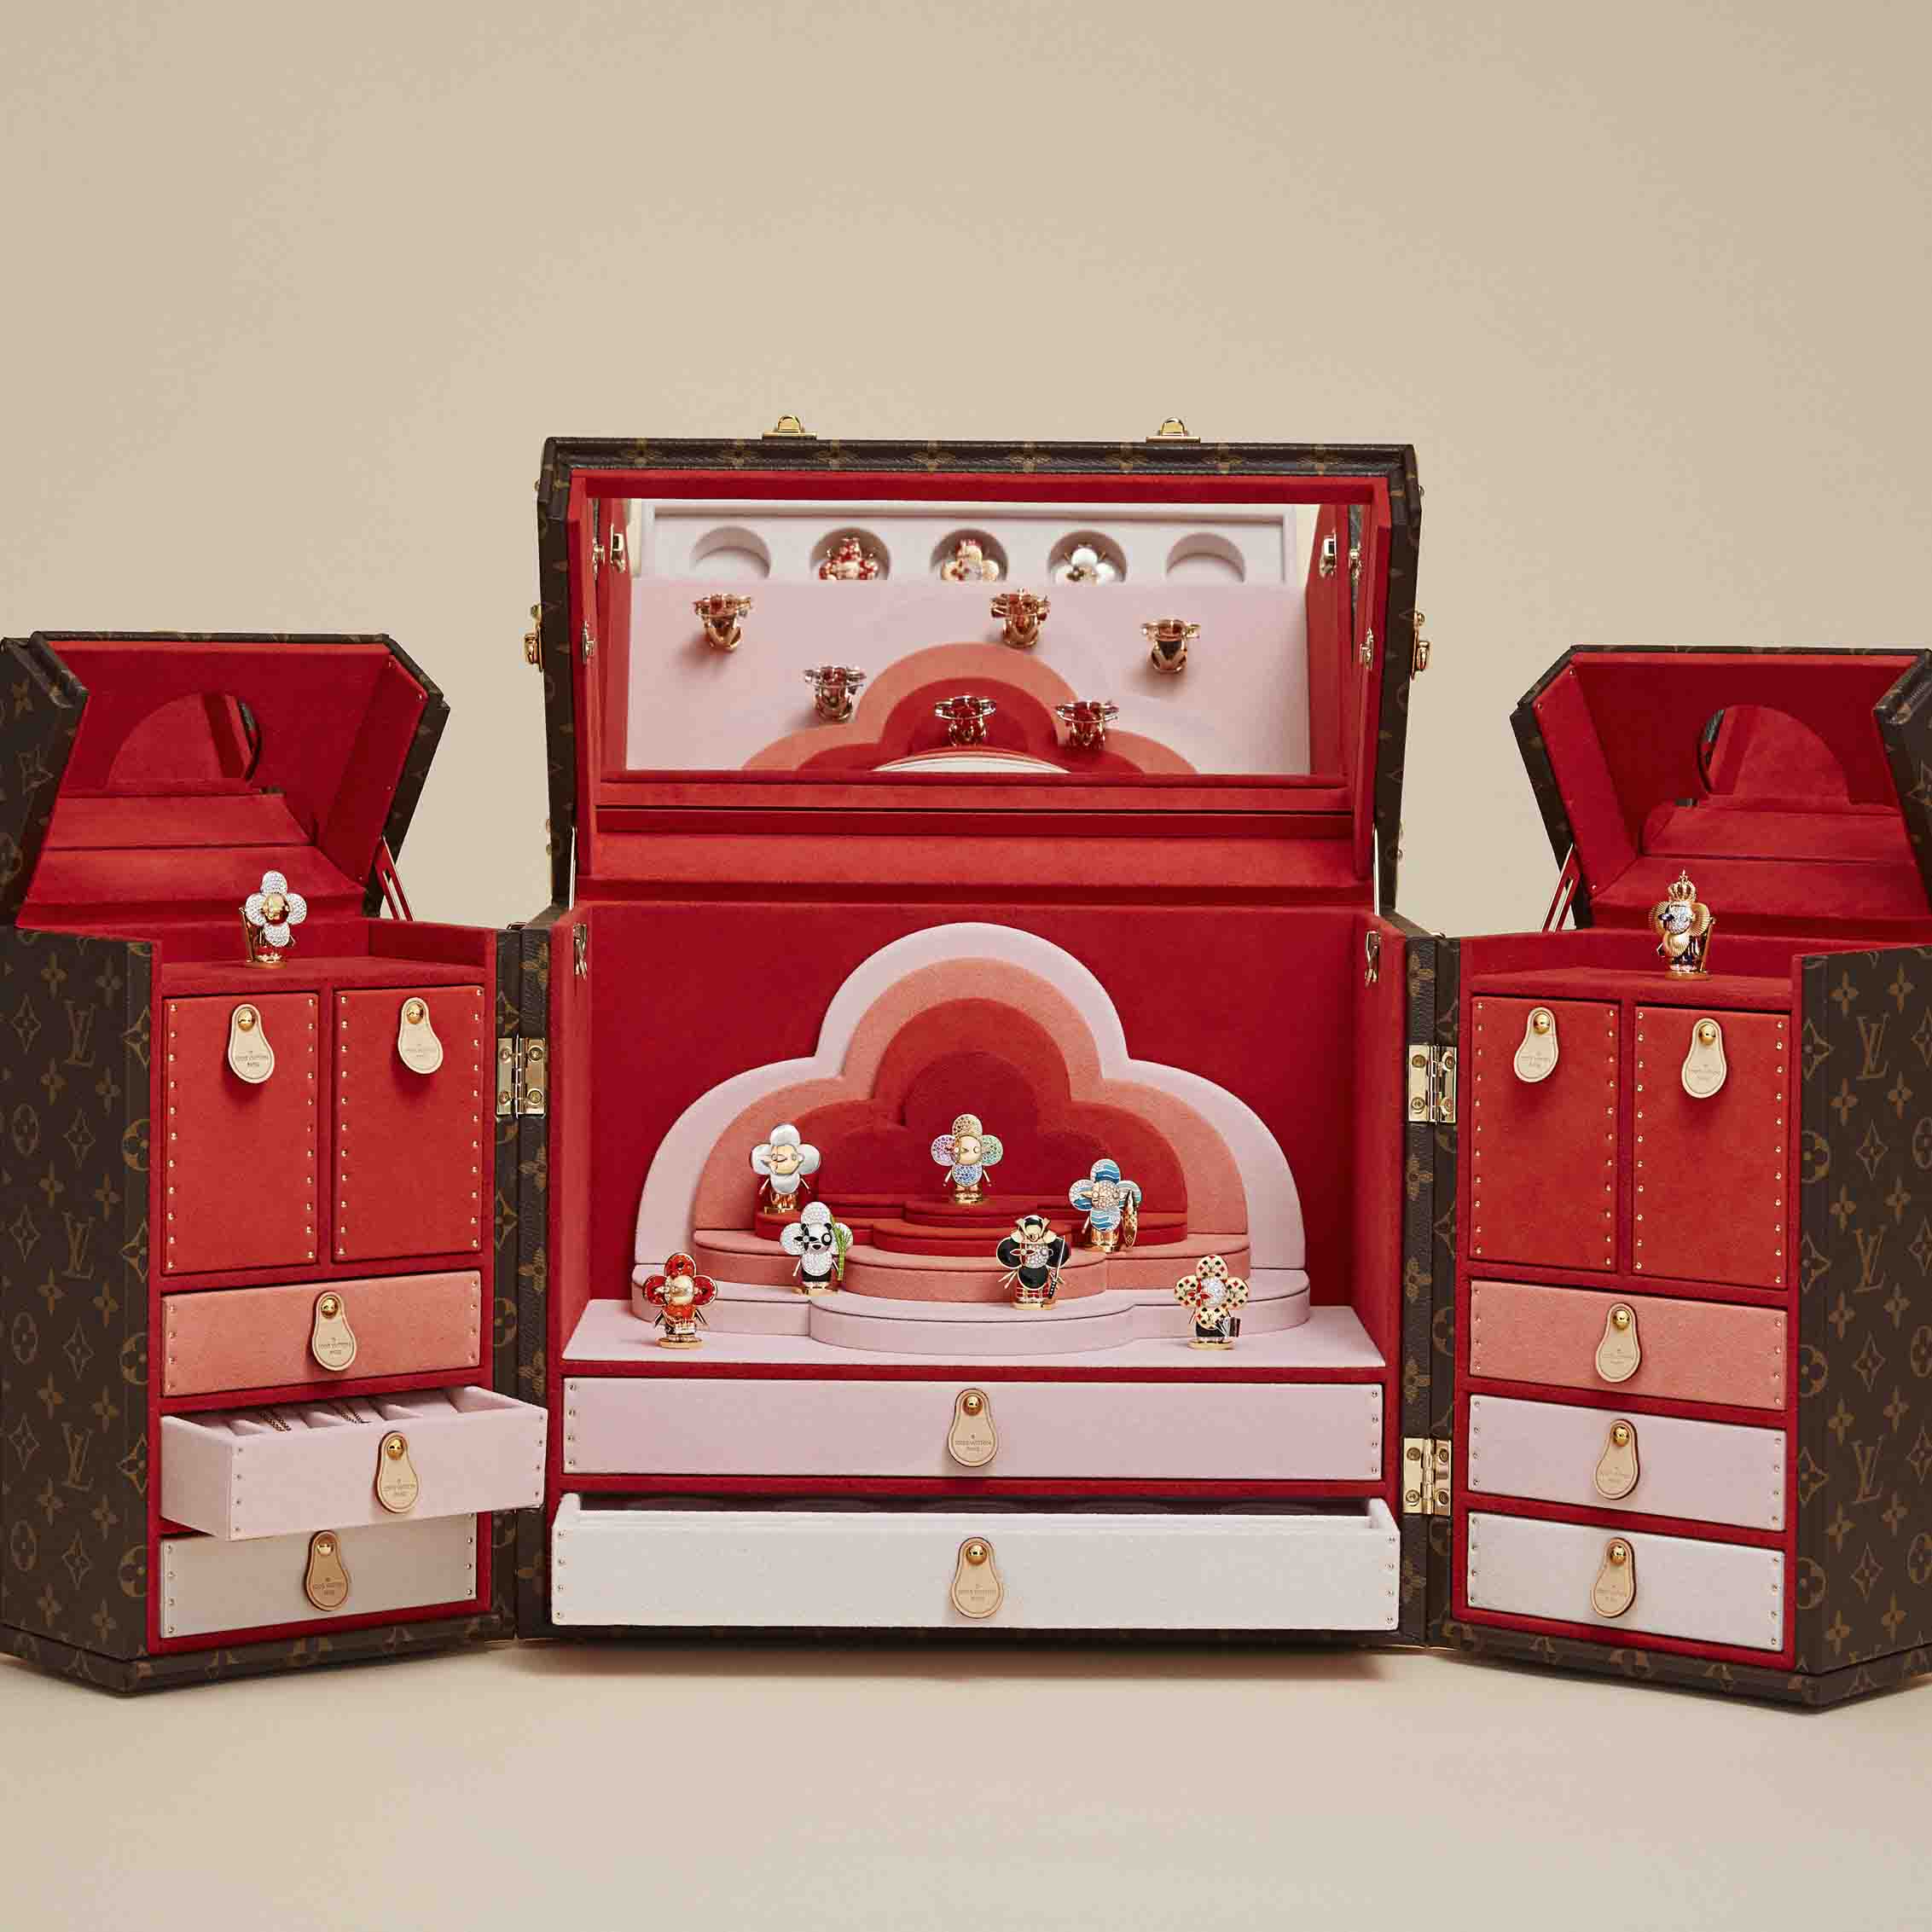 Louis Vuitton vanity case Louis Vuitton jewelry box Louis Vuitton box   Les Puces de Paris SaintOuen